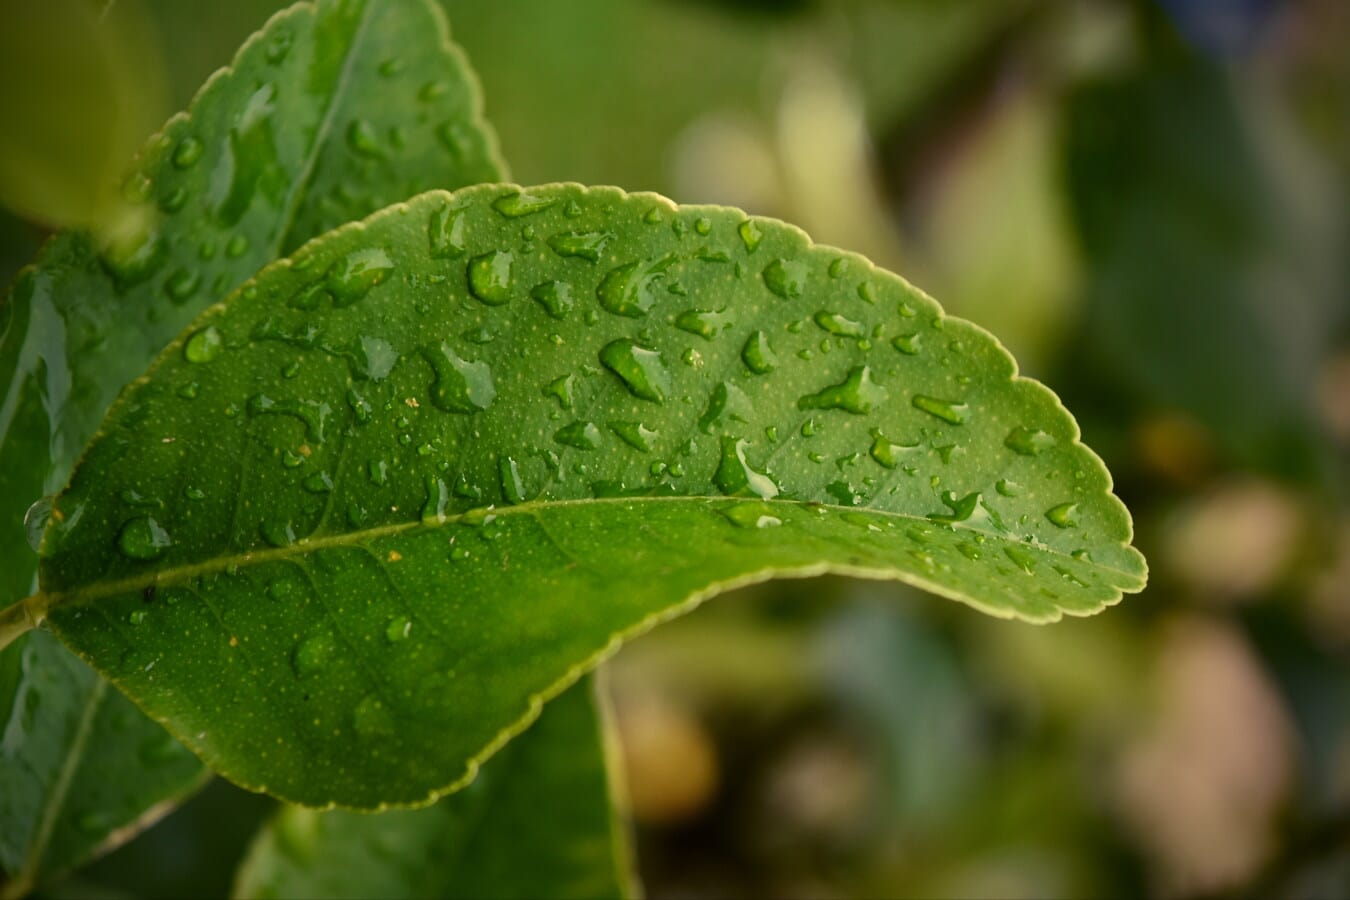 picătură de apă, droplet-uri, picătură de ploaie, ploaie, frunza verde, până aproape, frunze, iarbă, plante, natura